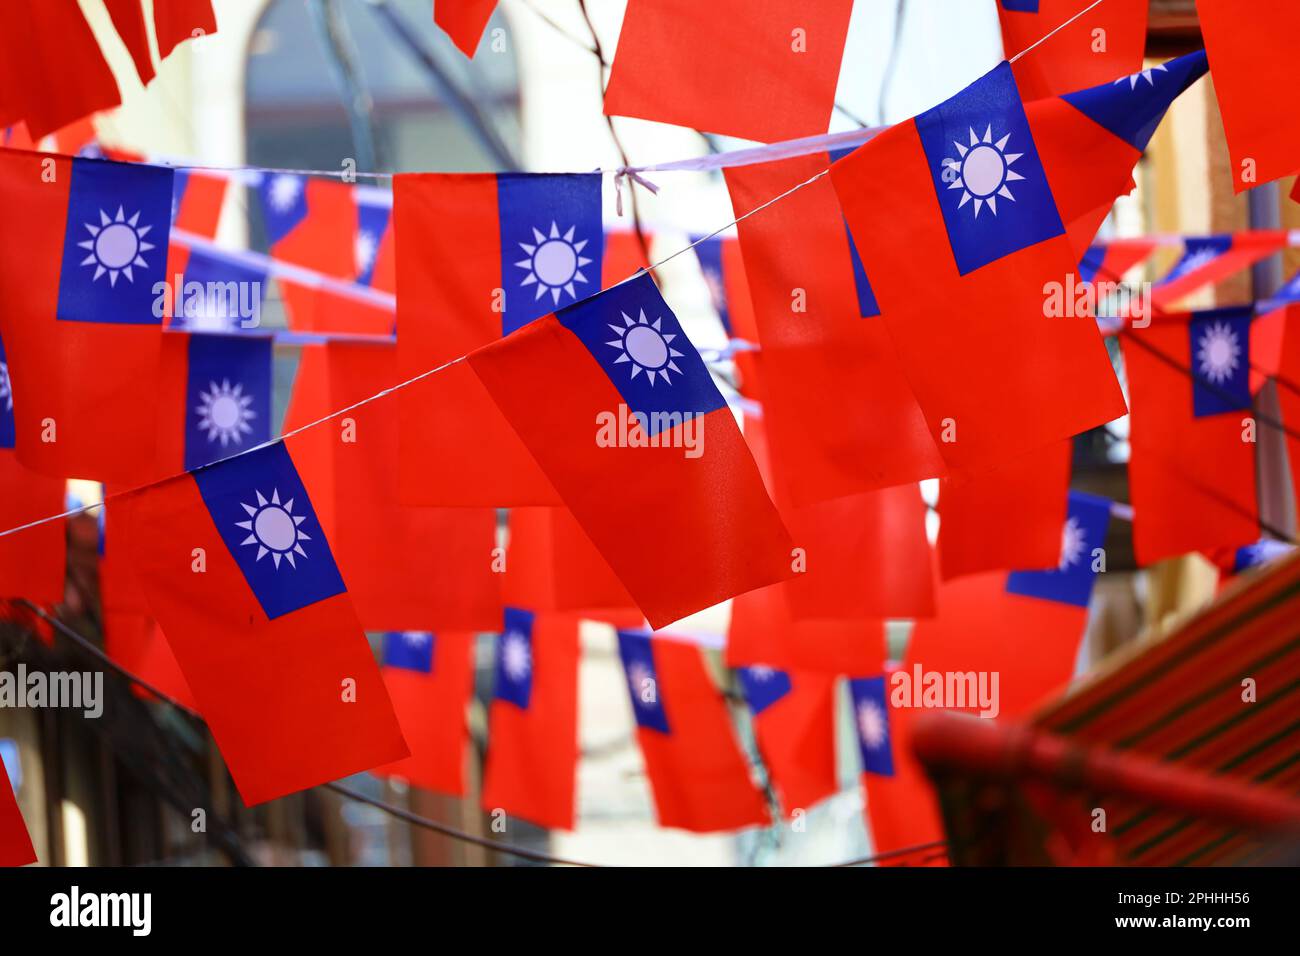 Viele lebendige taiwanesische Flaggen, die in der Seitengasse über dem Kopf dekoriert sind Stockfoto